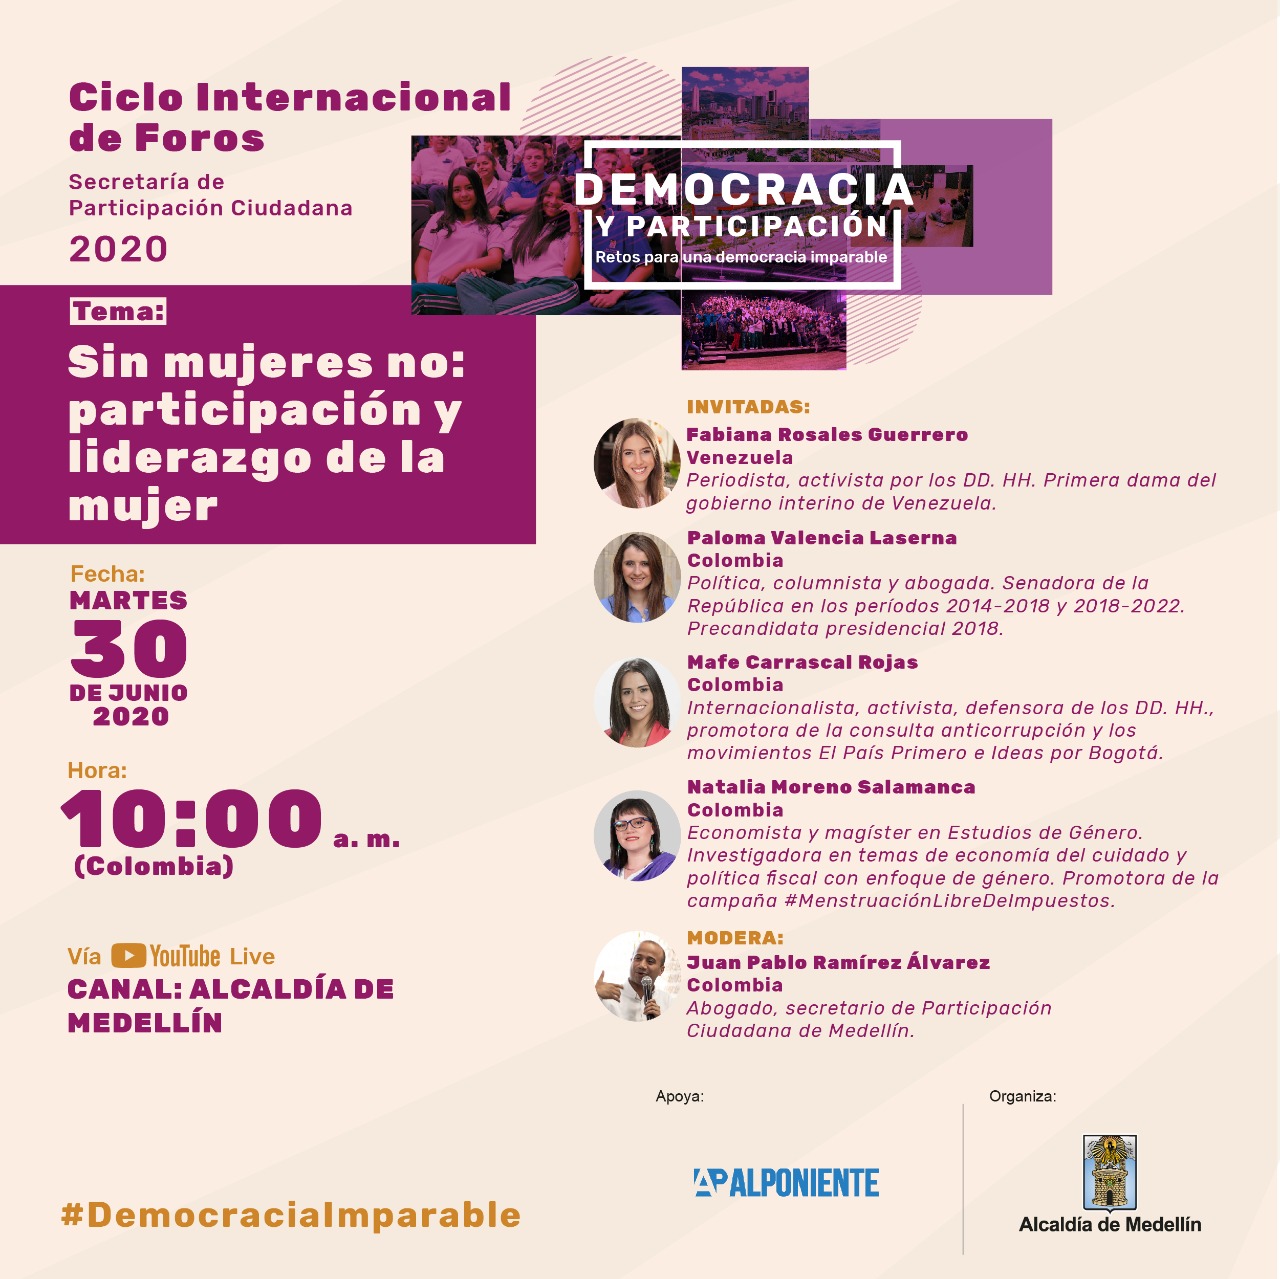 FotografoParticipación Ciudadana:Foro internacional sobre participación y liderazgo de la mujer